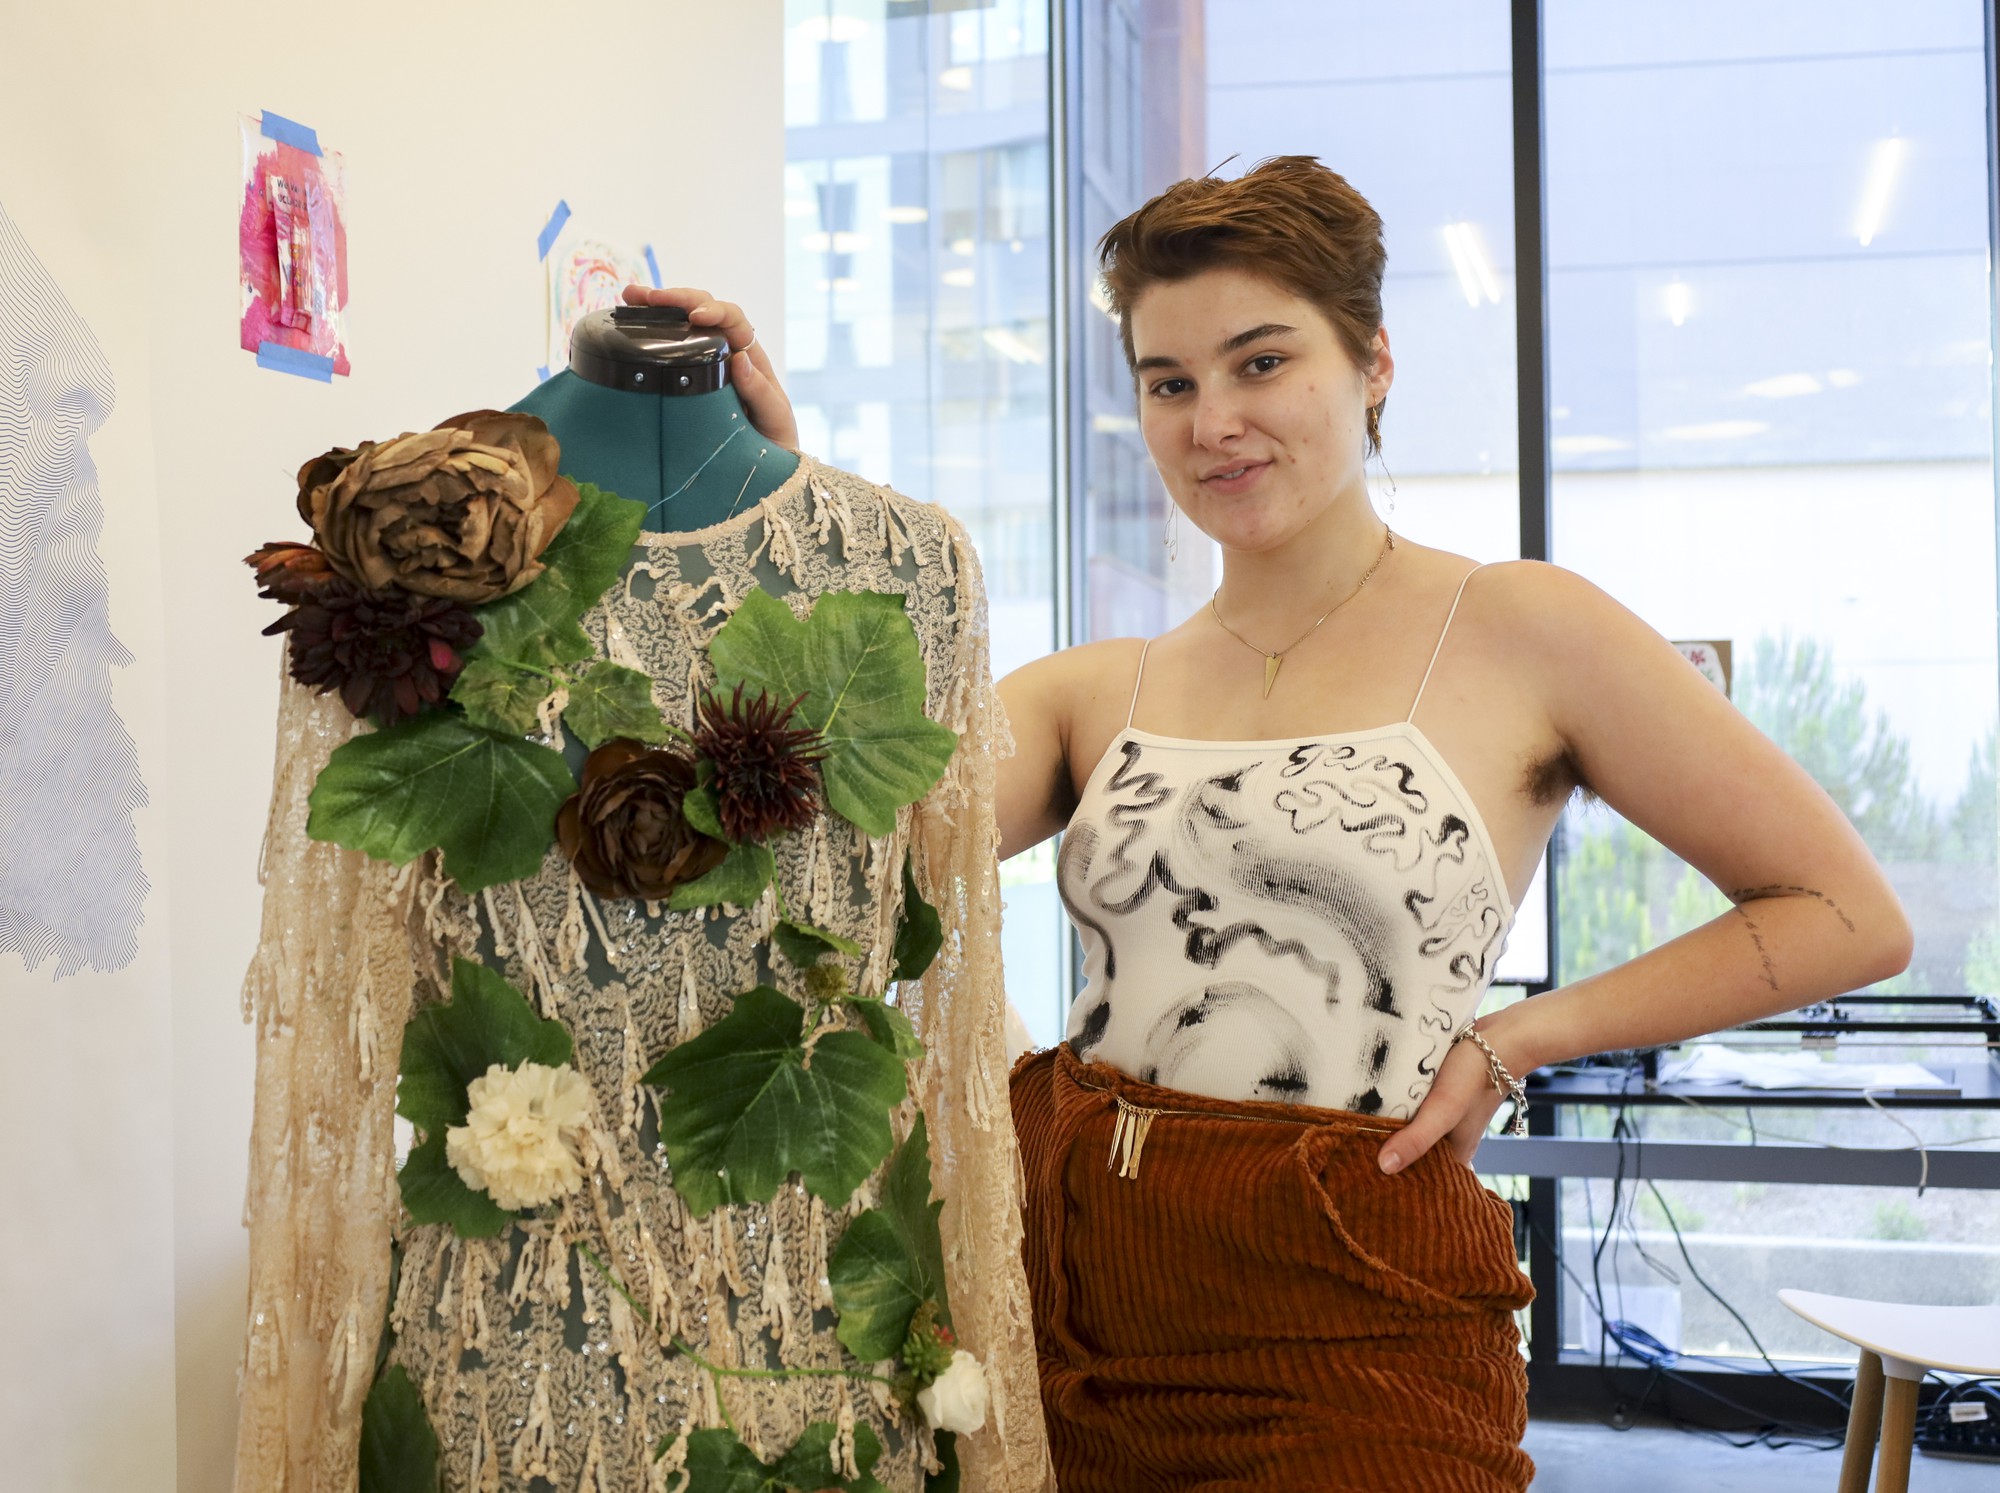 FAST 2022: Caroline Hersman challenges gender binaries with new fashion line